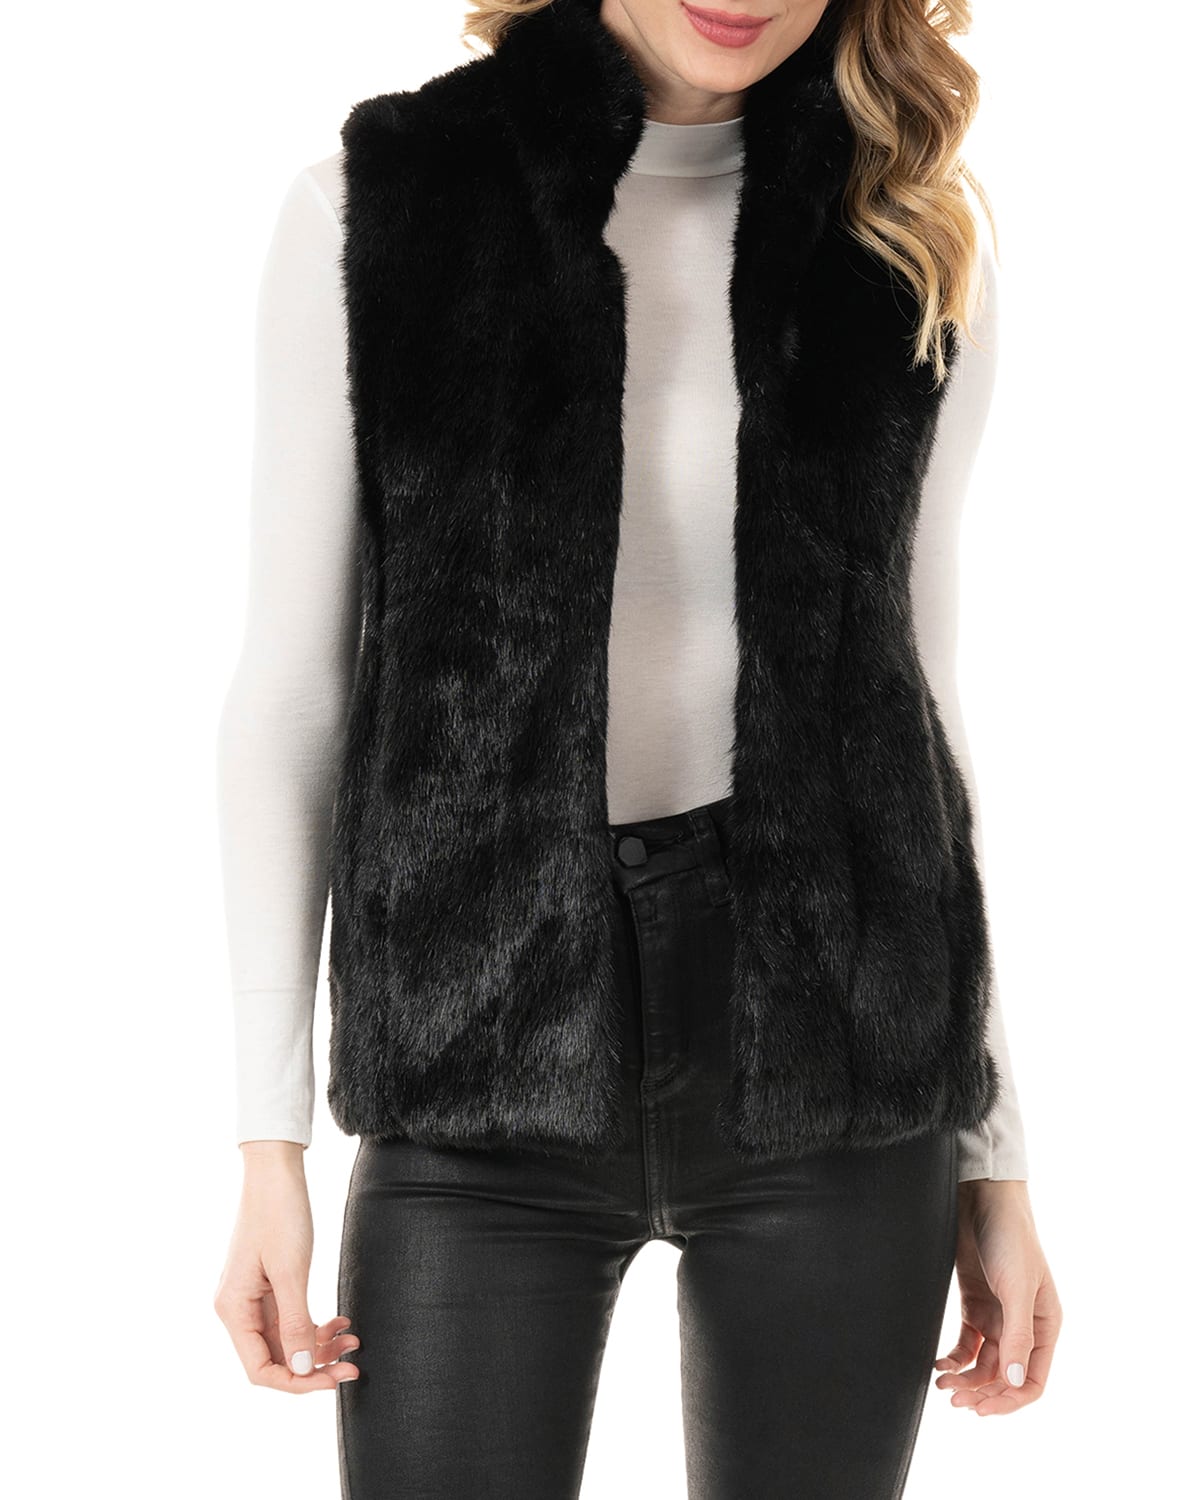 Fabulous Furs Signature Faux-Fur Vest - Inclusive Sizing